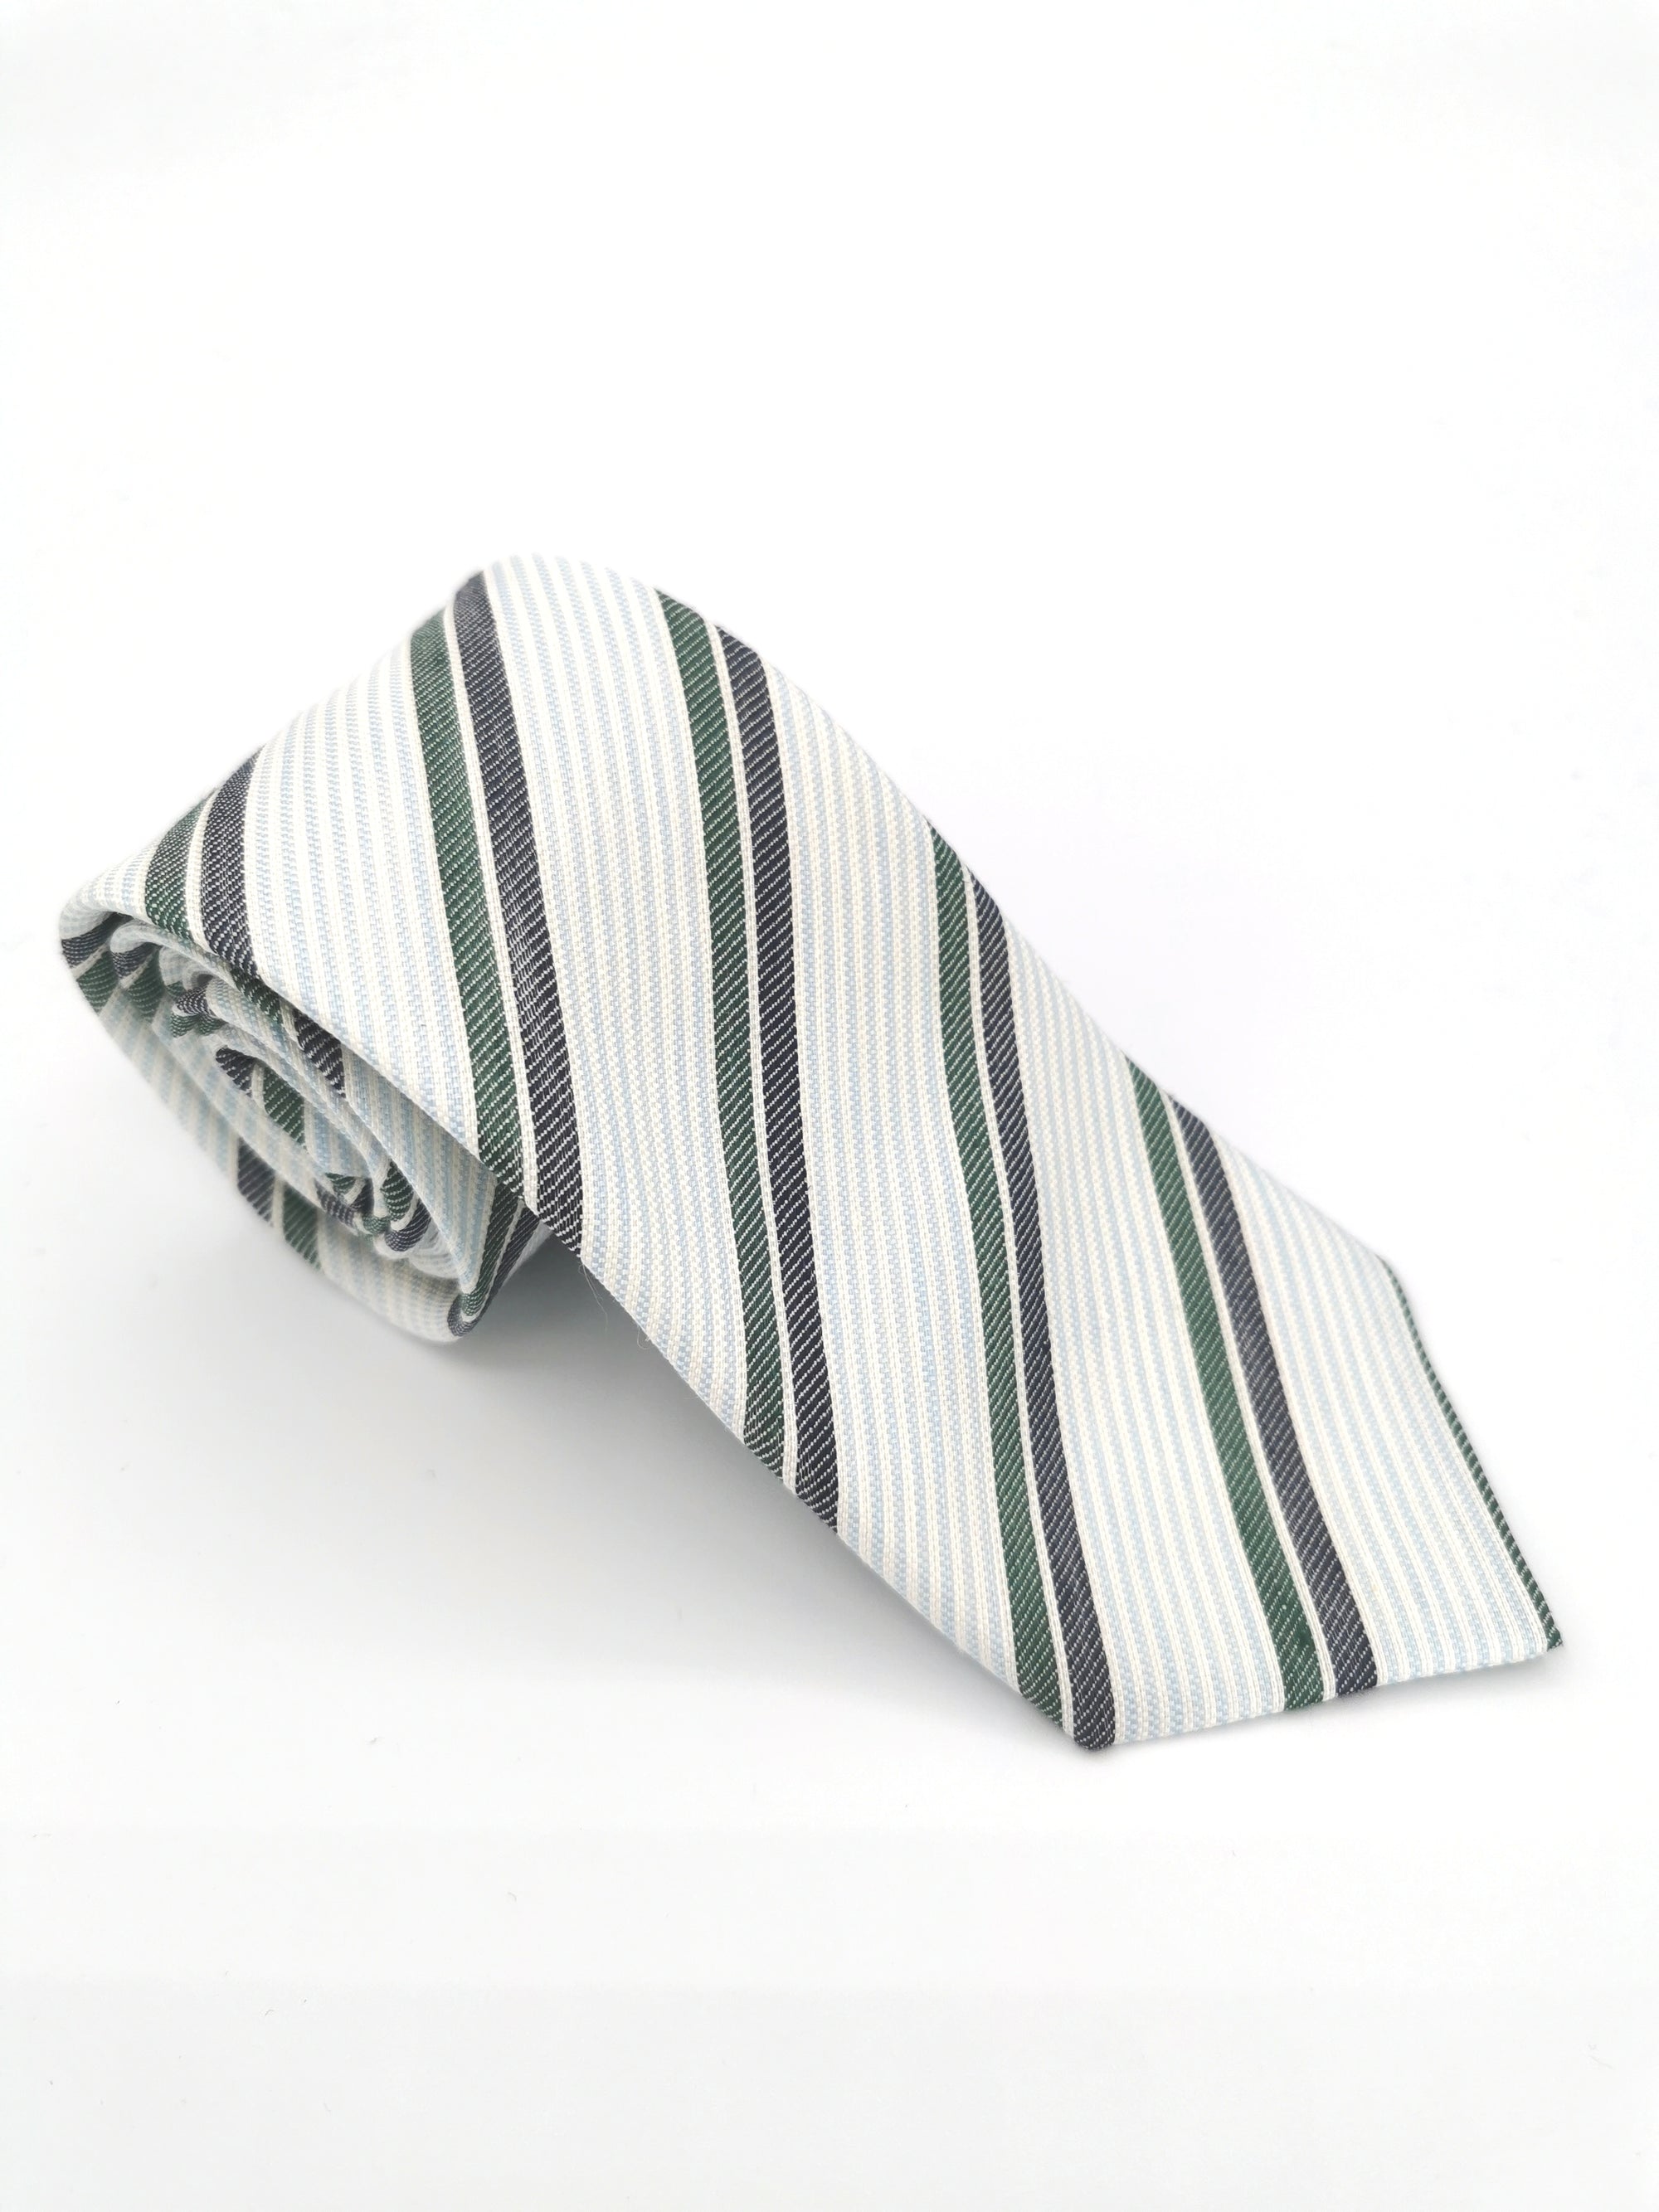 Cravate Ferala en soie blanche à rayures grises et vertes